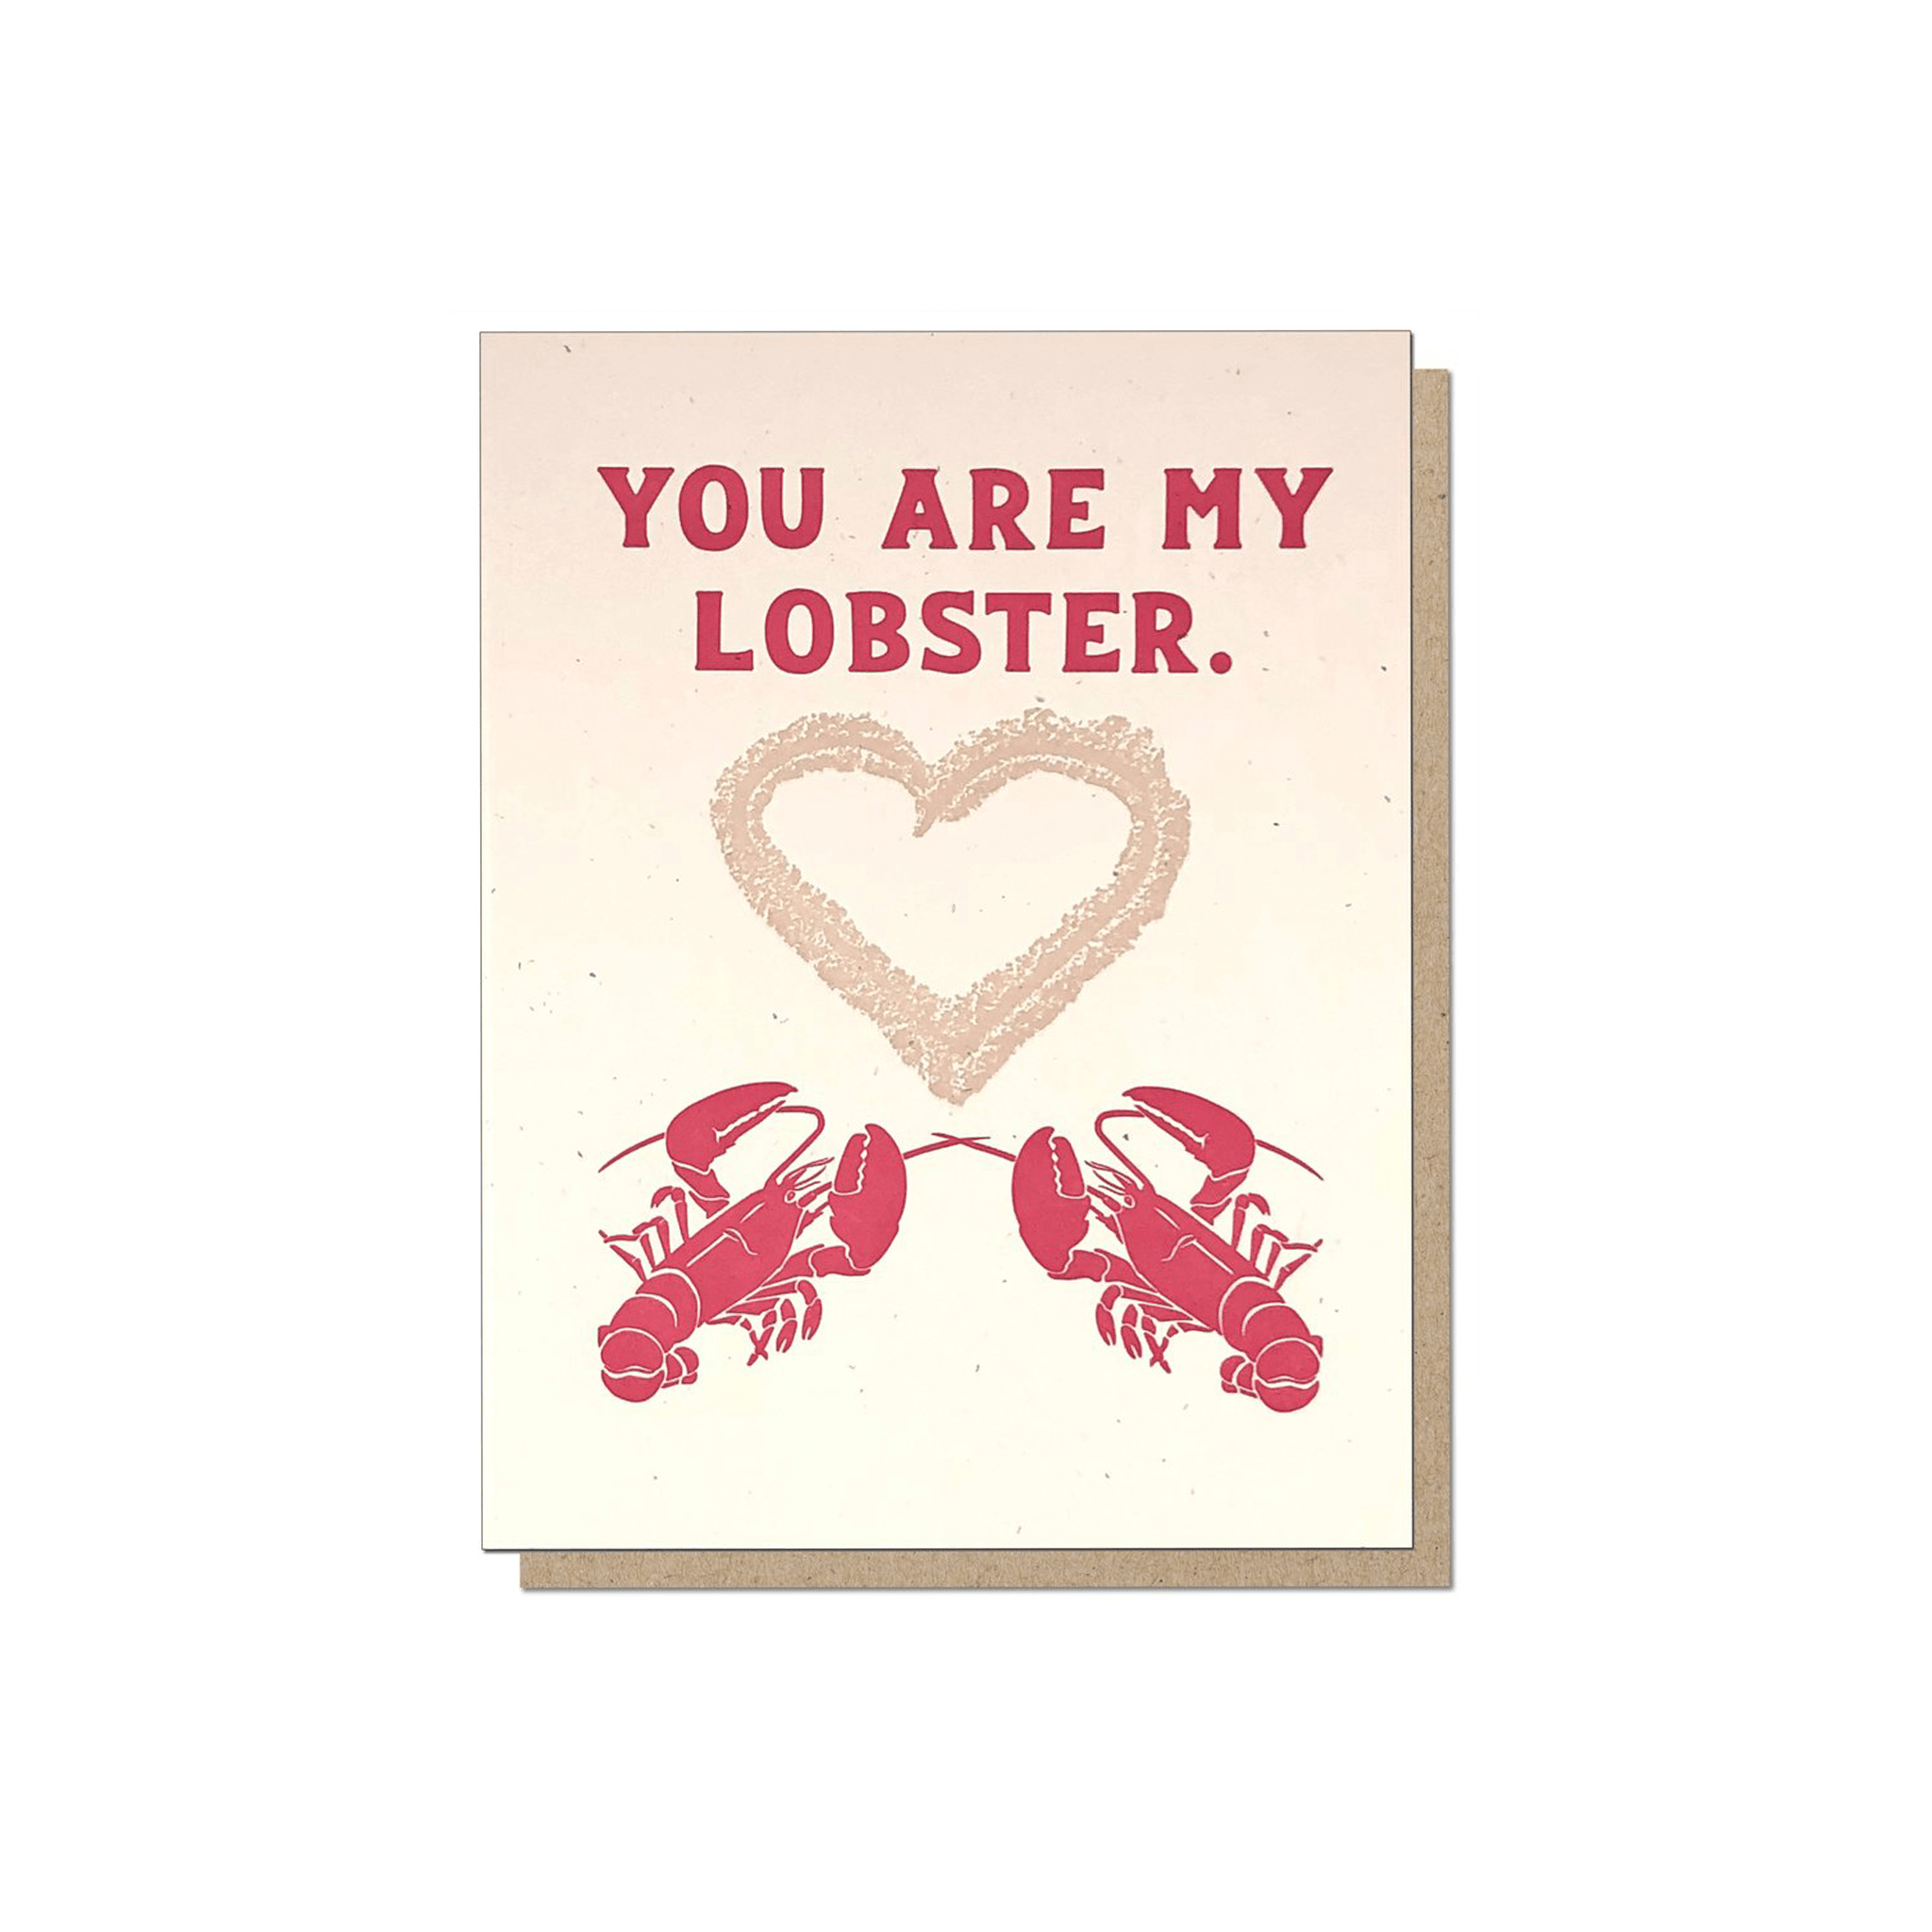 Guttersnipe Press Lobster Card - Laywine's